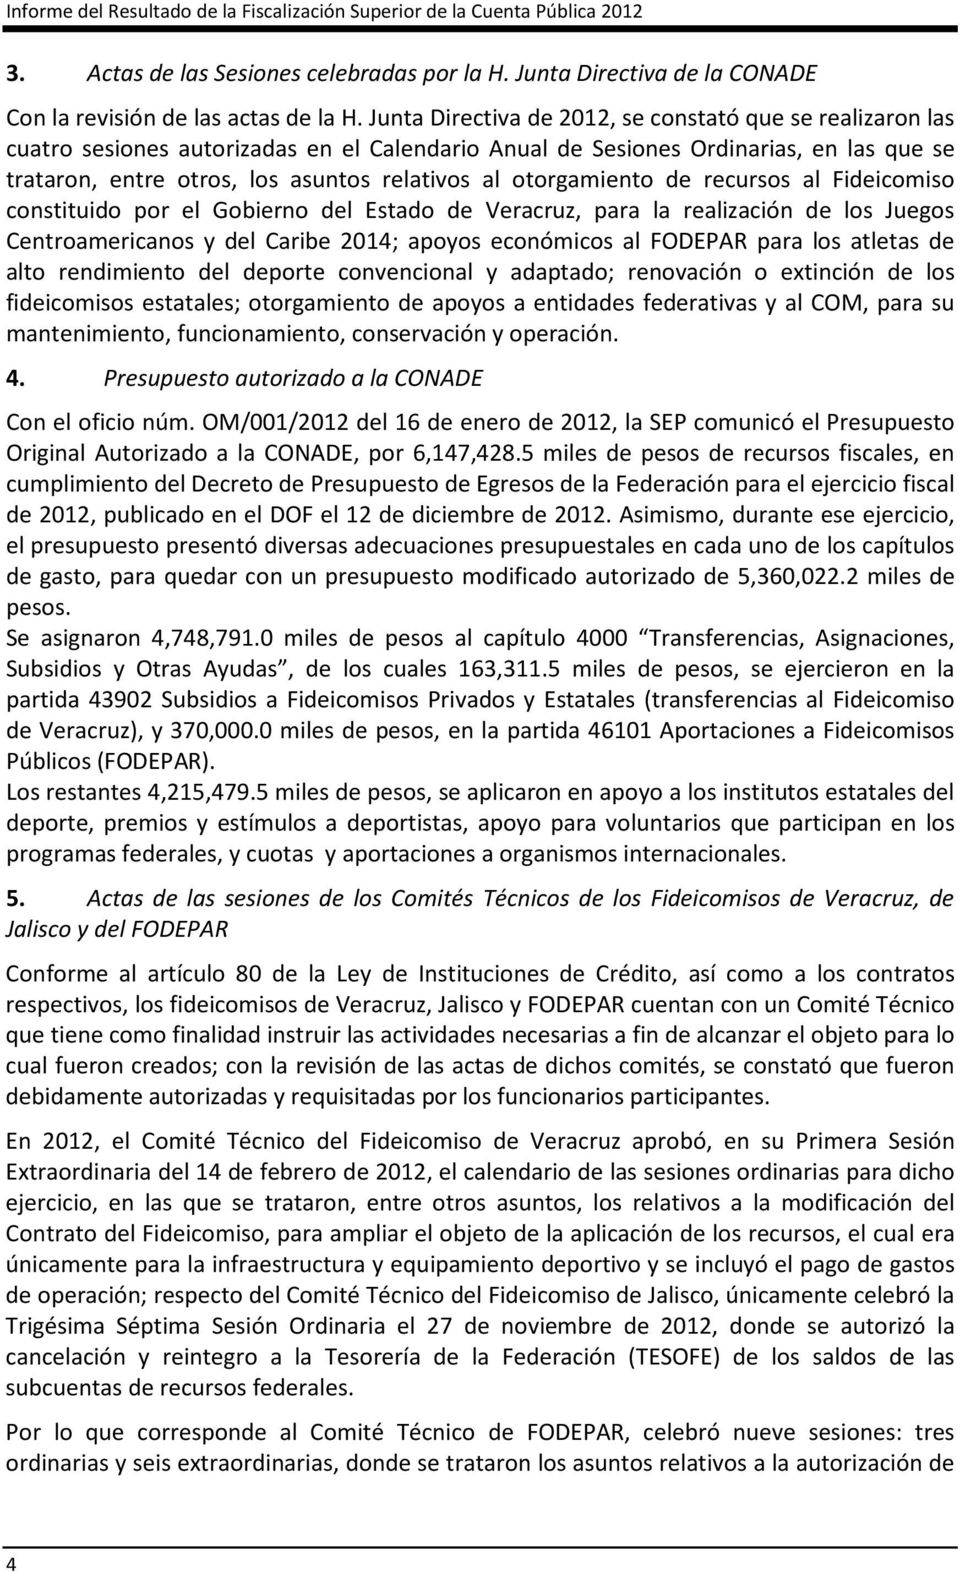 otorgamiento de recursos al Fideicomiso constituido por el Gobierno del Estado de Veracruz, para la realización de los Juegos Centroamericanos y del Caribe 2014; apoyos económicos al FODEPAR para los